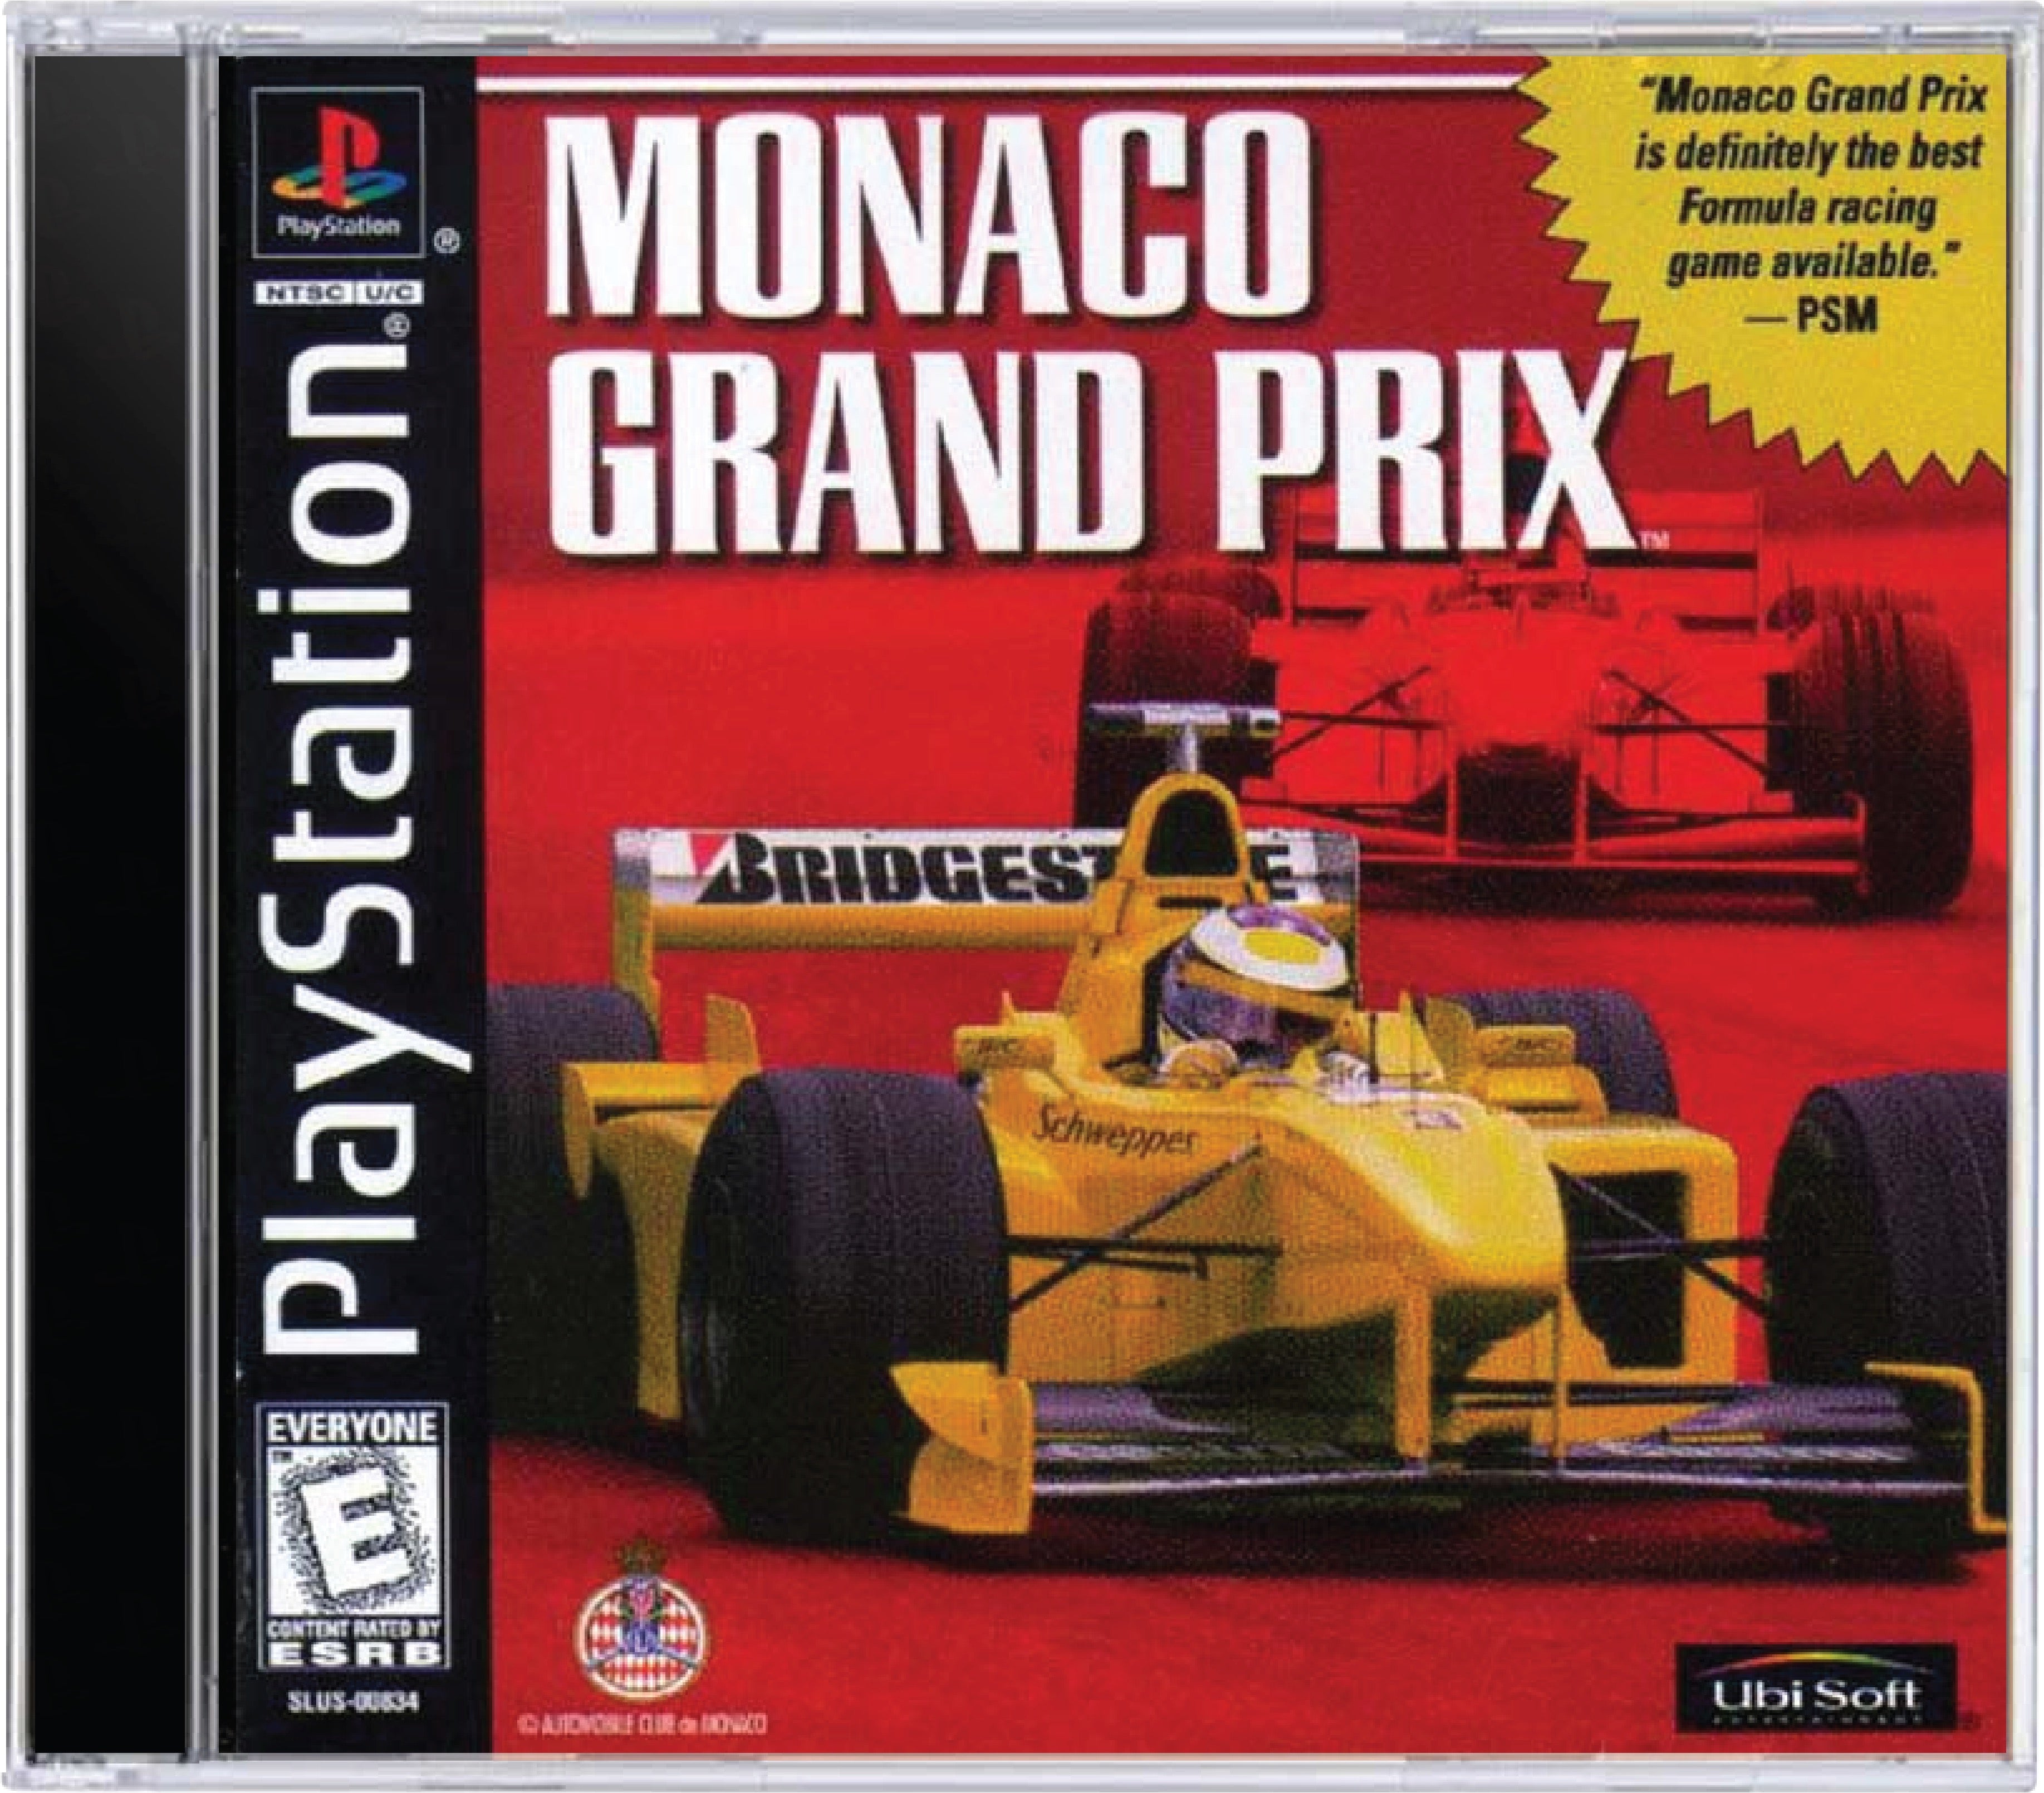 Monaco Grand Prix Cover Art and Product Photo